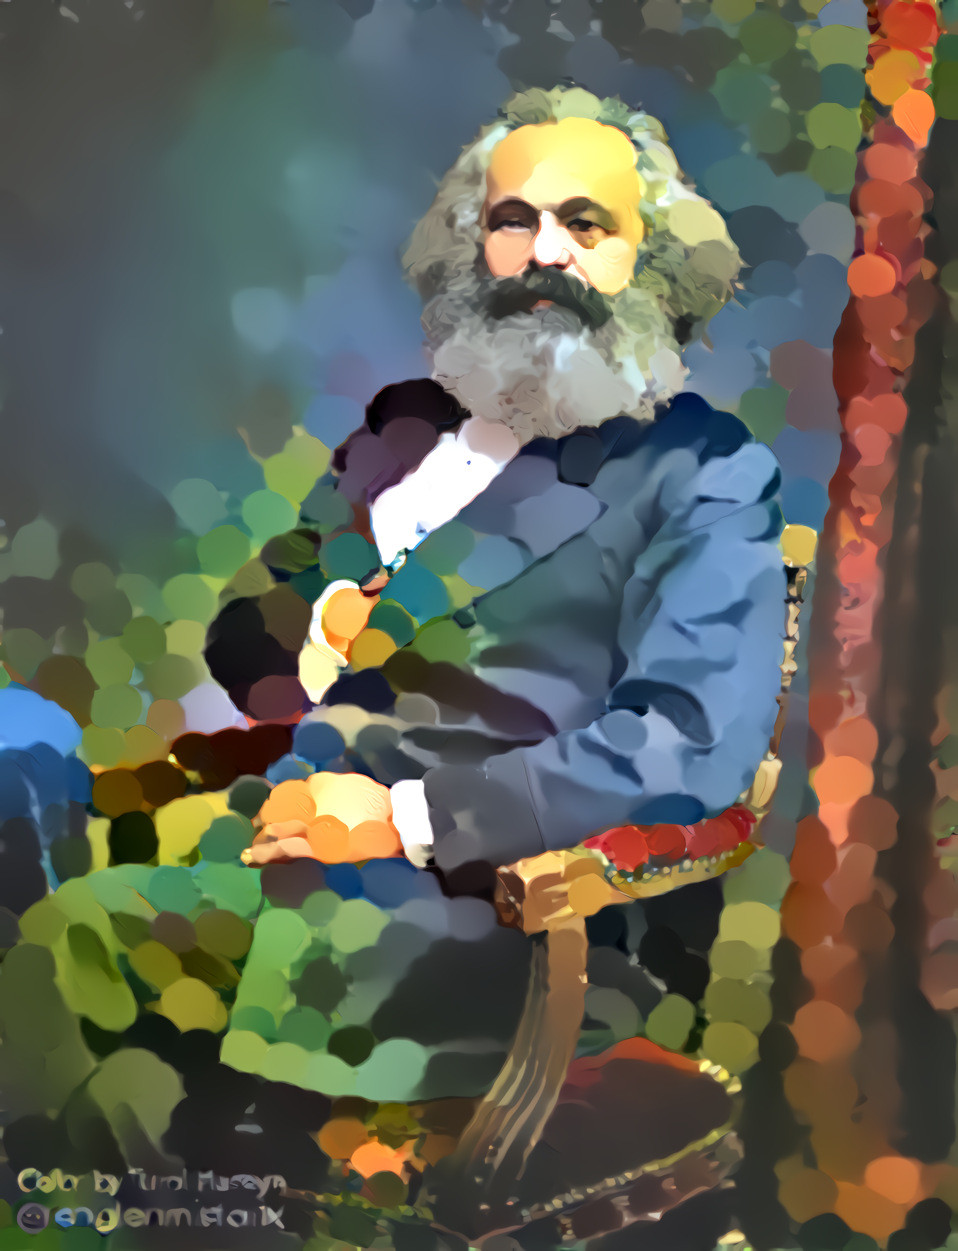 Blobby Marx